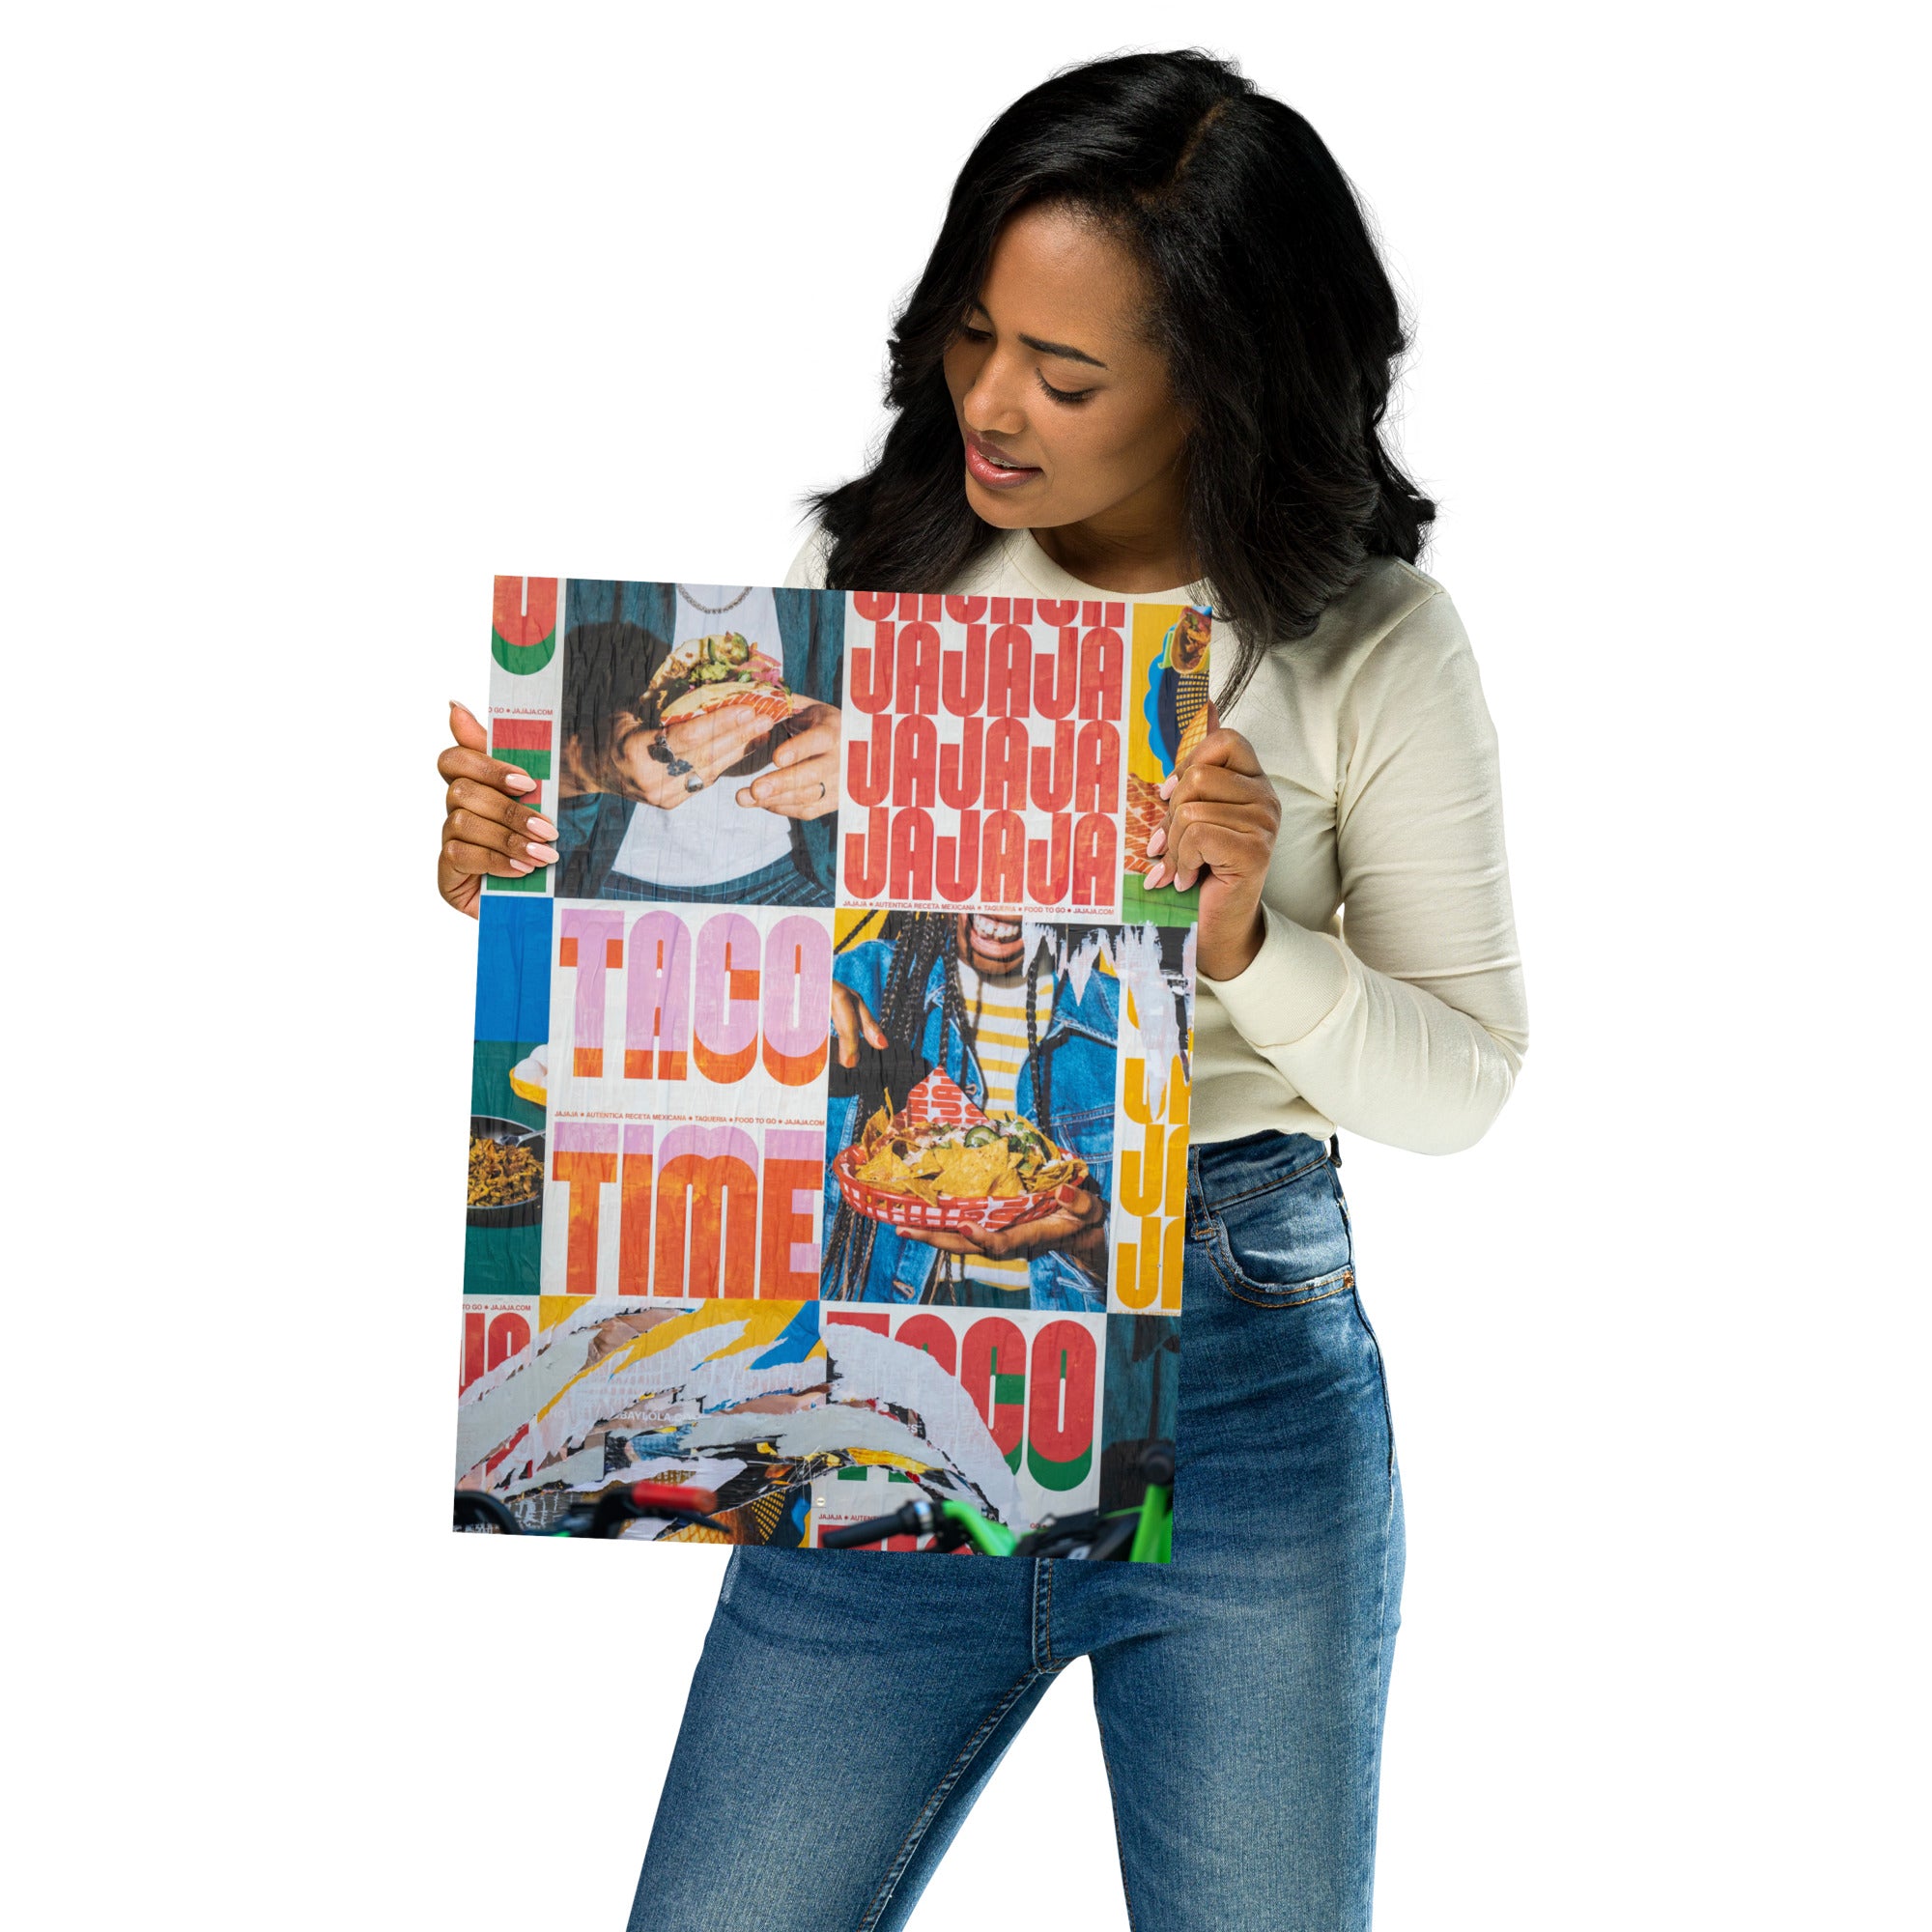 Photographie en couleur 'Jajaja', affichant des publicités animées pour 'Tacos Time' avec des images de tacos et de tortillas chips.